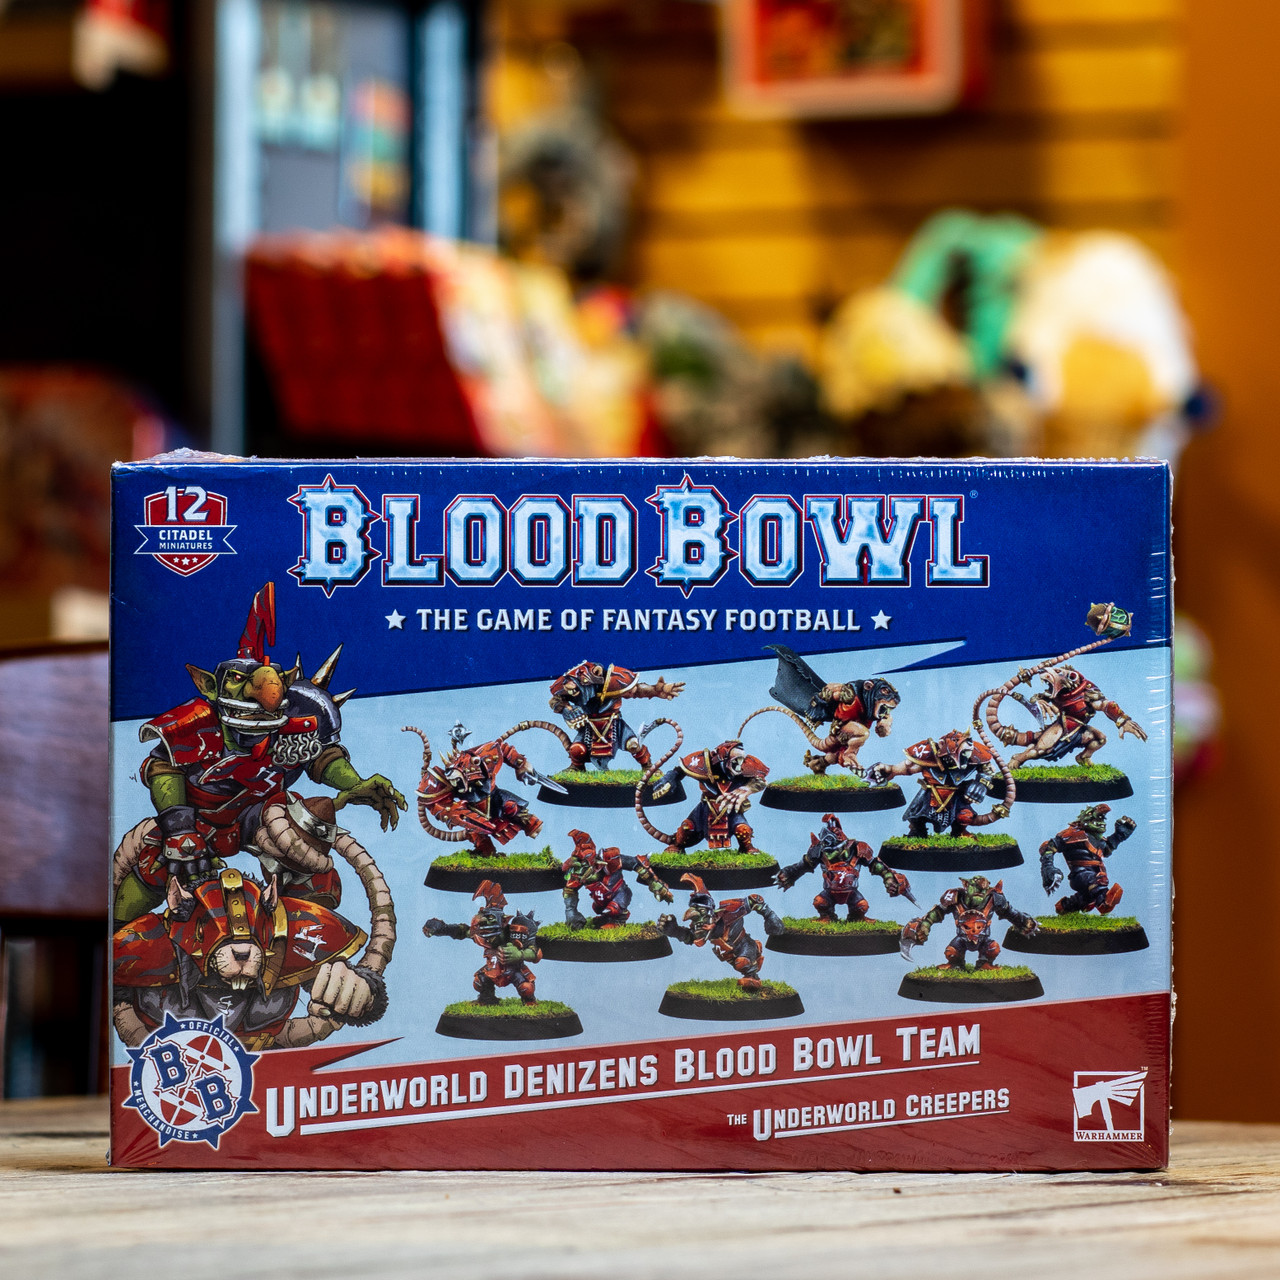 Blood Bowl - Underworld Denizens Team, the Underworld Creepers